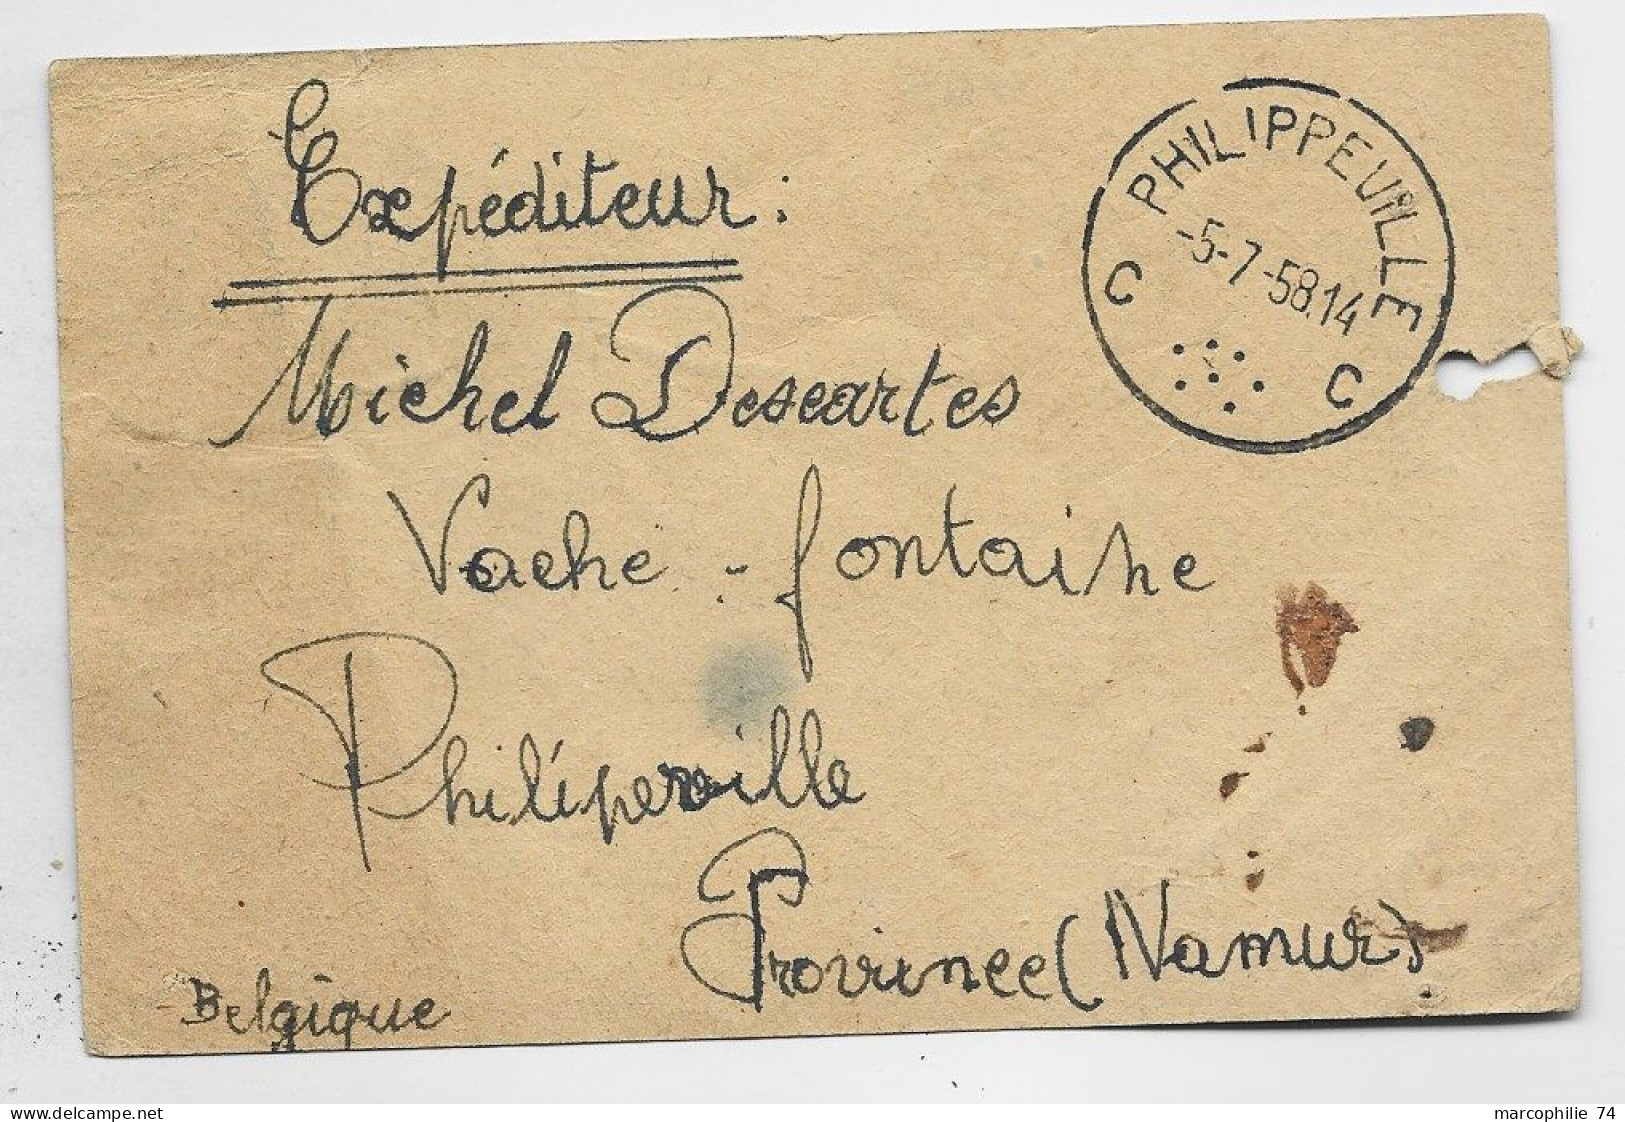 FRANCE TAXE GERBES 10FR+20FR FRANCONVILLE 1953 SUR CARTE POSTALE PAR BALLON DE BELGIQUE PHILIPPEVILLE NAMUR - 1859-1959 Covers & Documents